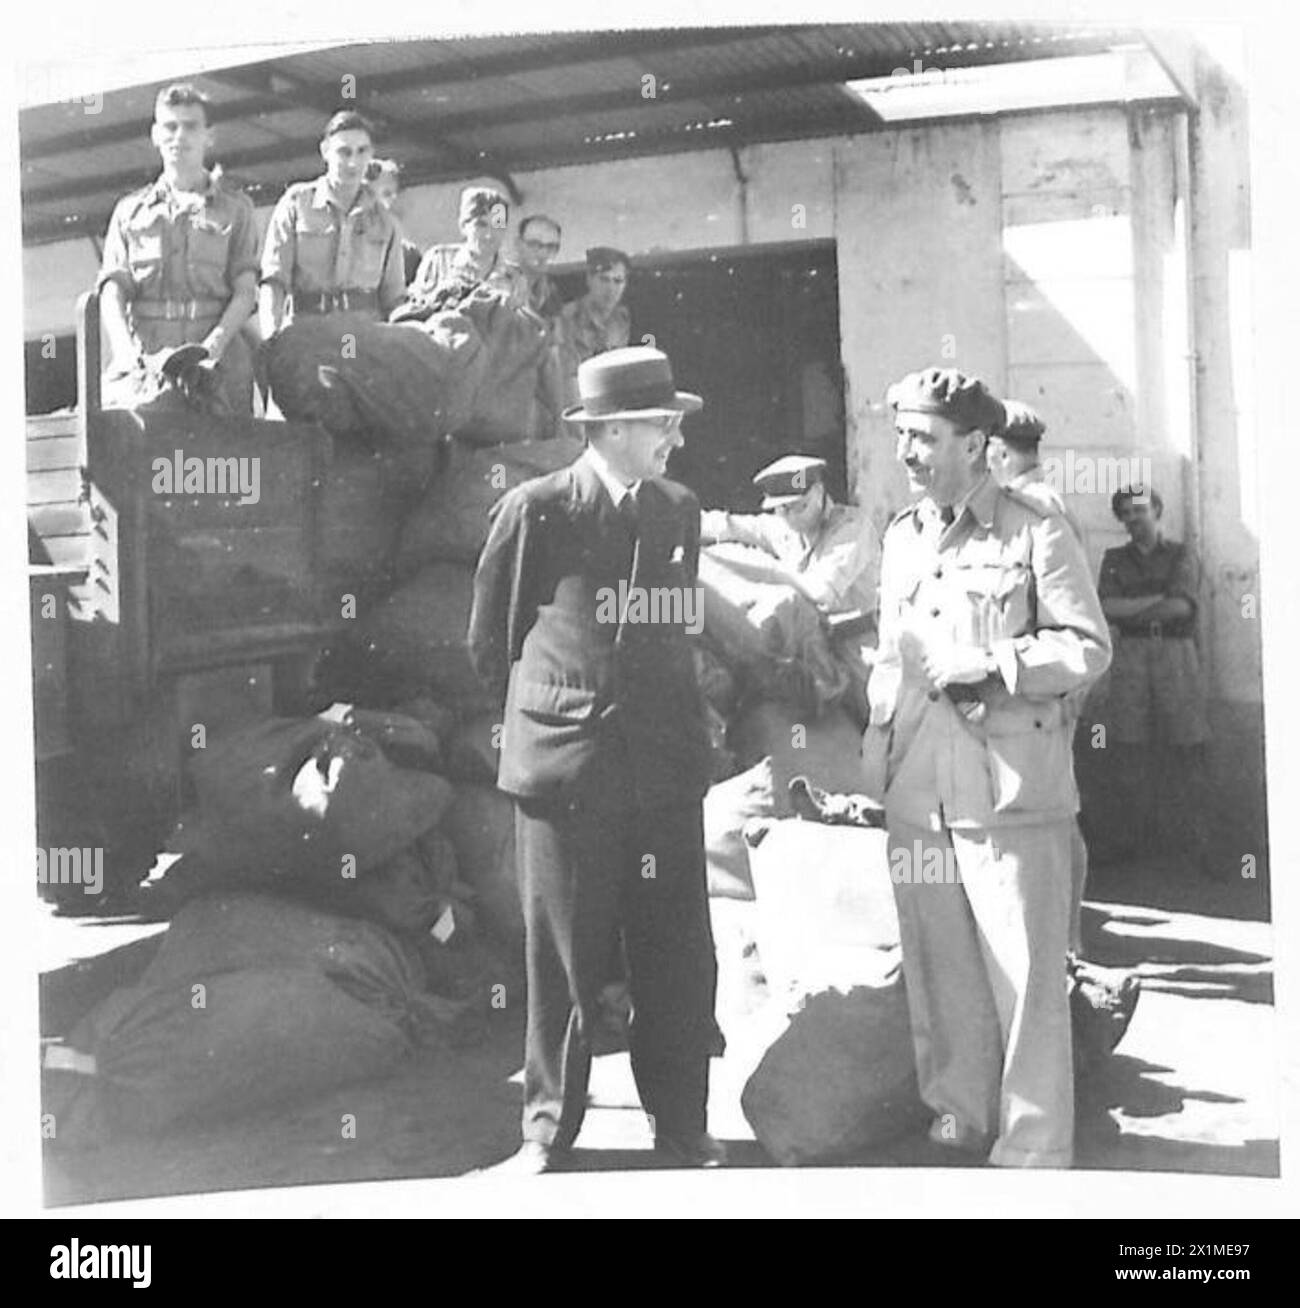 SECRÉTAIRE D'ÉTAT À LA GUERRE EN AFRIQUE DU NORD - au bureau de poste de l'armée, Sir James discute avec un officier pendant que le courrier est déchargé d'un camion en arrière-plan, l'armée britannique Banque D'Images